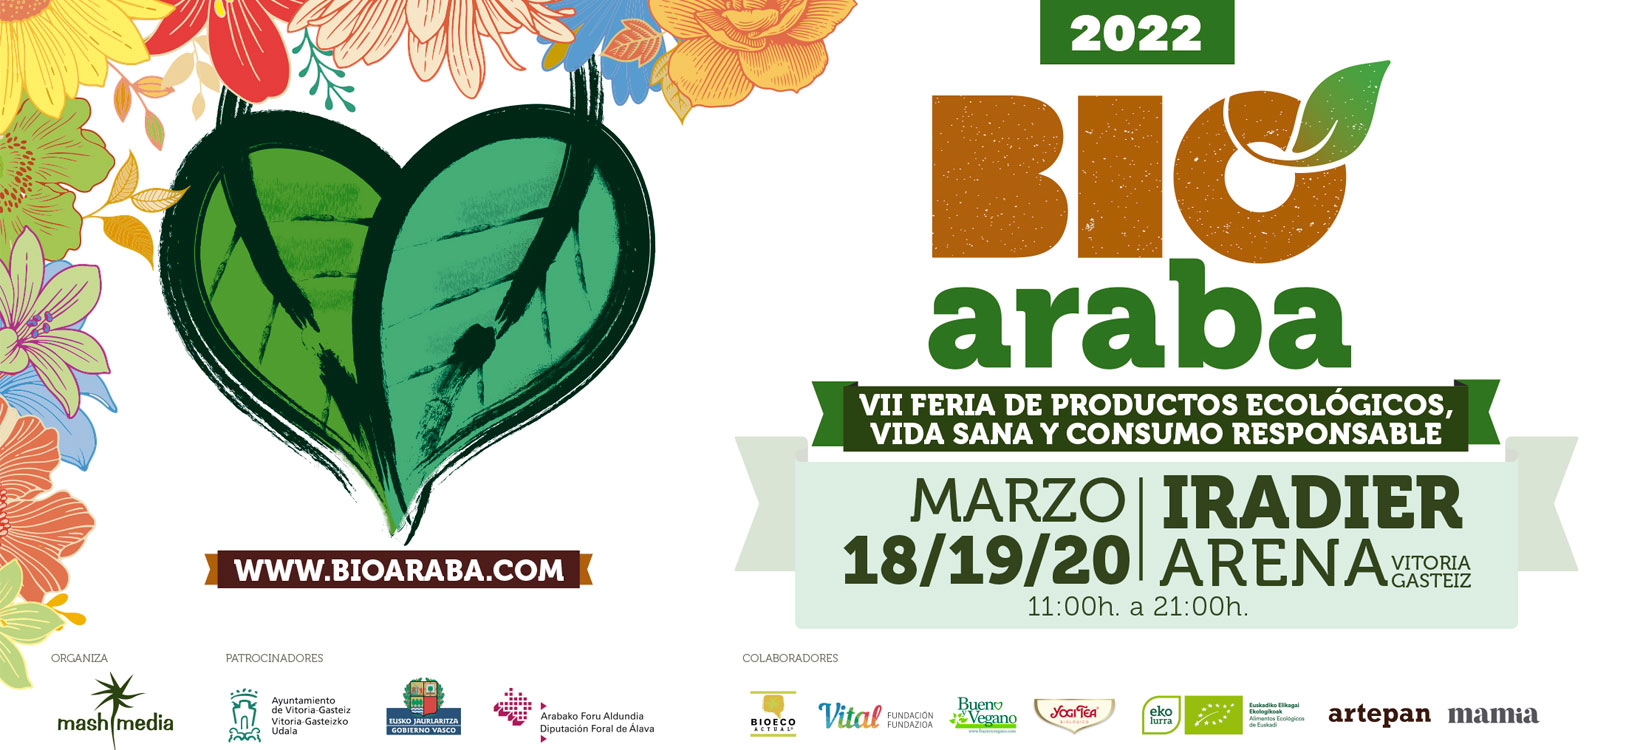 La feria Bioaraba se celebrará del 18 al 20 de marzo en Vitoria